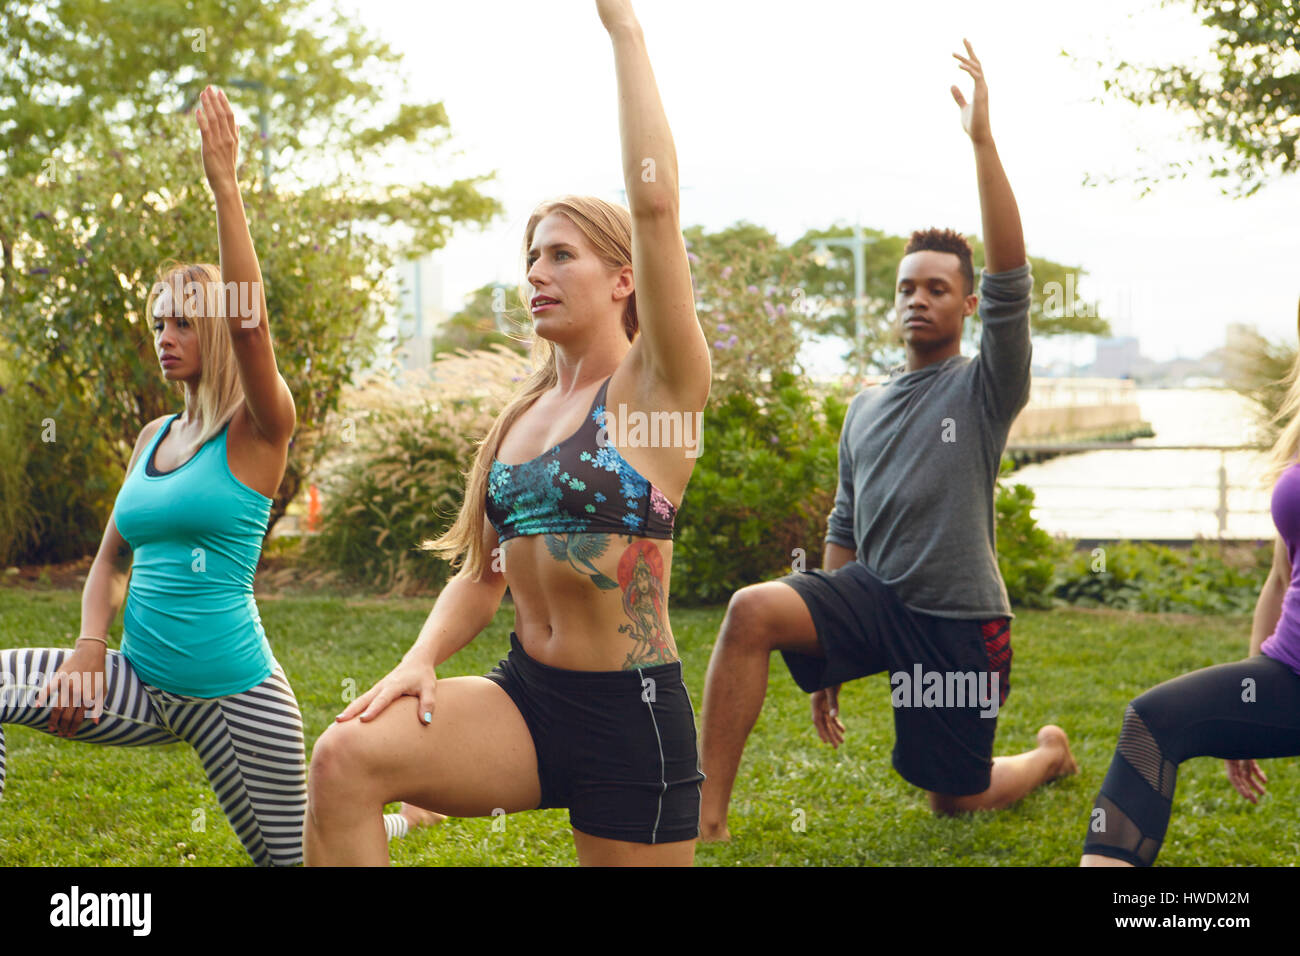 Les hommes et les femmes pratiquant le yoga posent un genou à terre dans le parc Banque D'Images